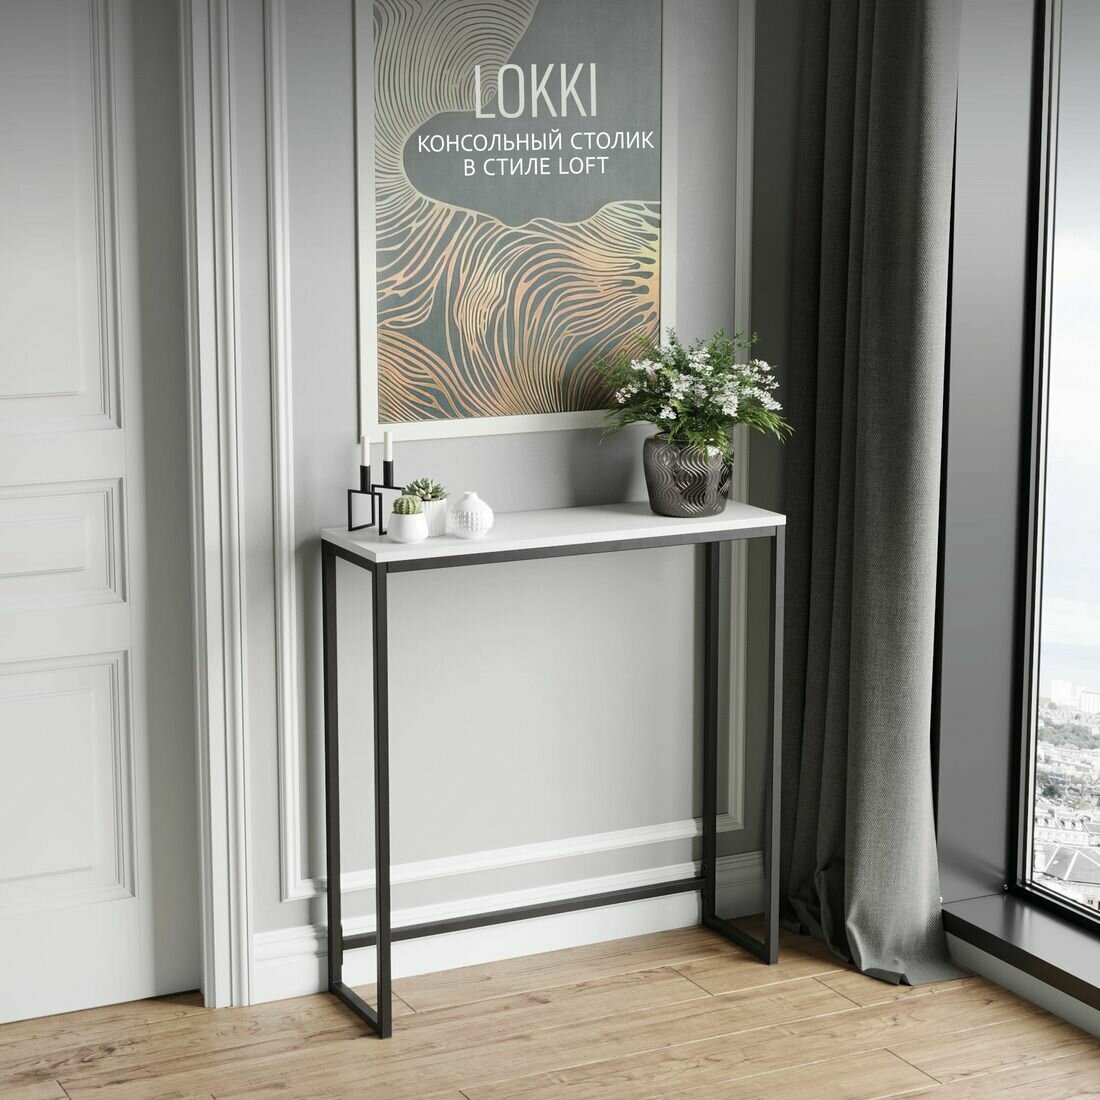 Консольный столик LOKKI loft, белый, приставной, туалетный столик металлический, 85x80x25 см, гростат